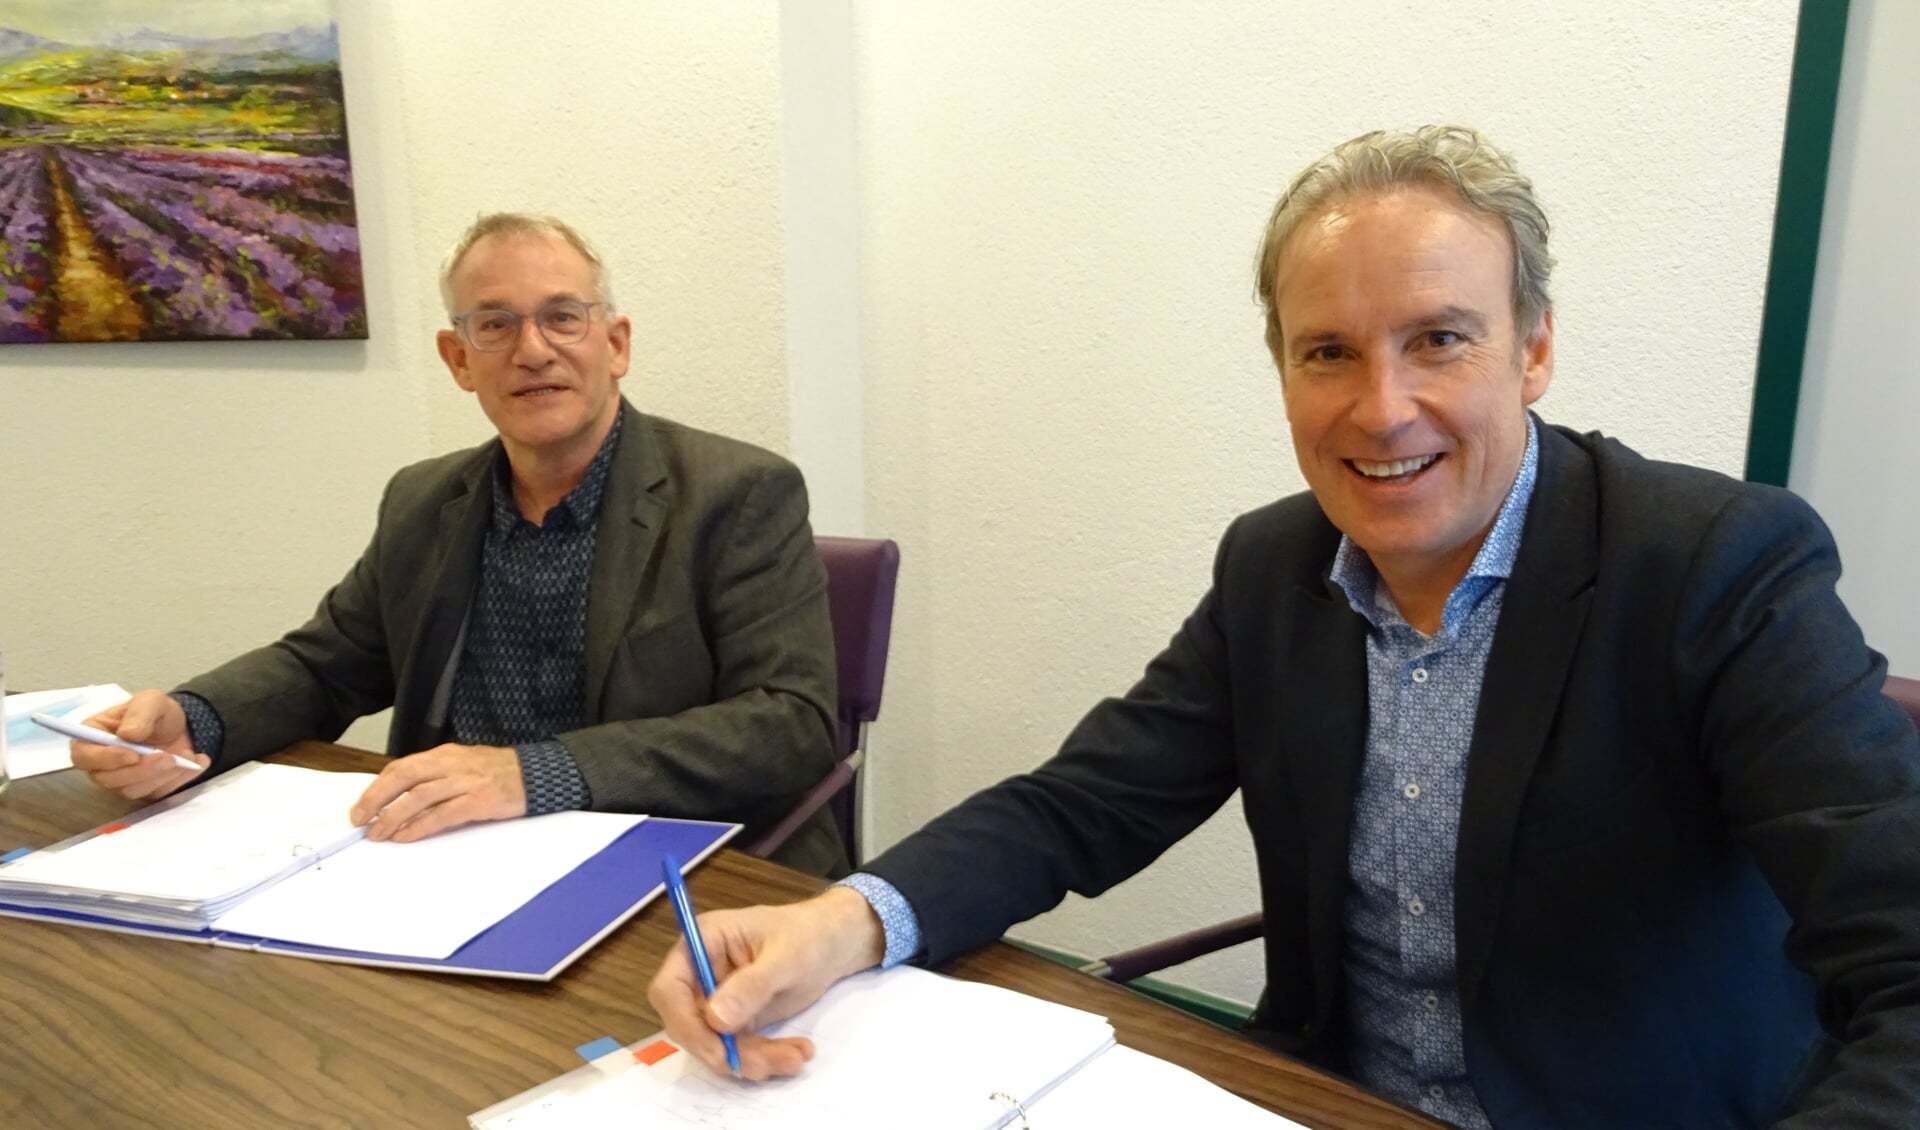 Jan Oprins (l) en Kees van den Buijs zetten hun handtekeningen onder de overeenkomst.